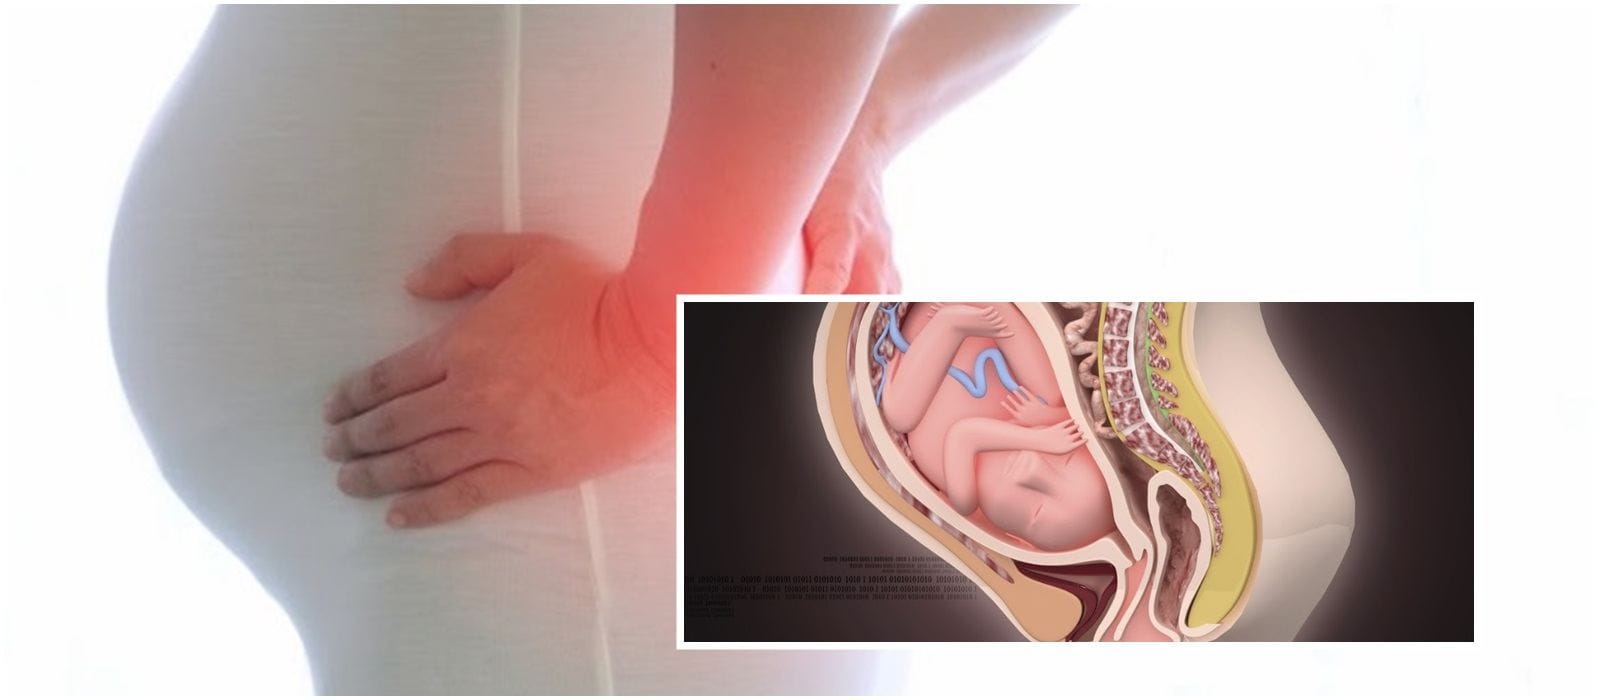 Vì sao người phụ nữ có thể bị đau bụng dưới gần mu khi mang thai?
